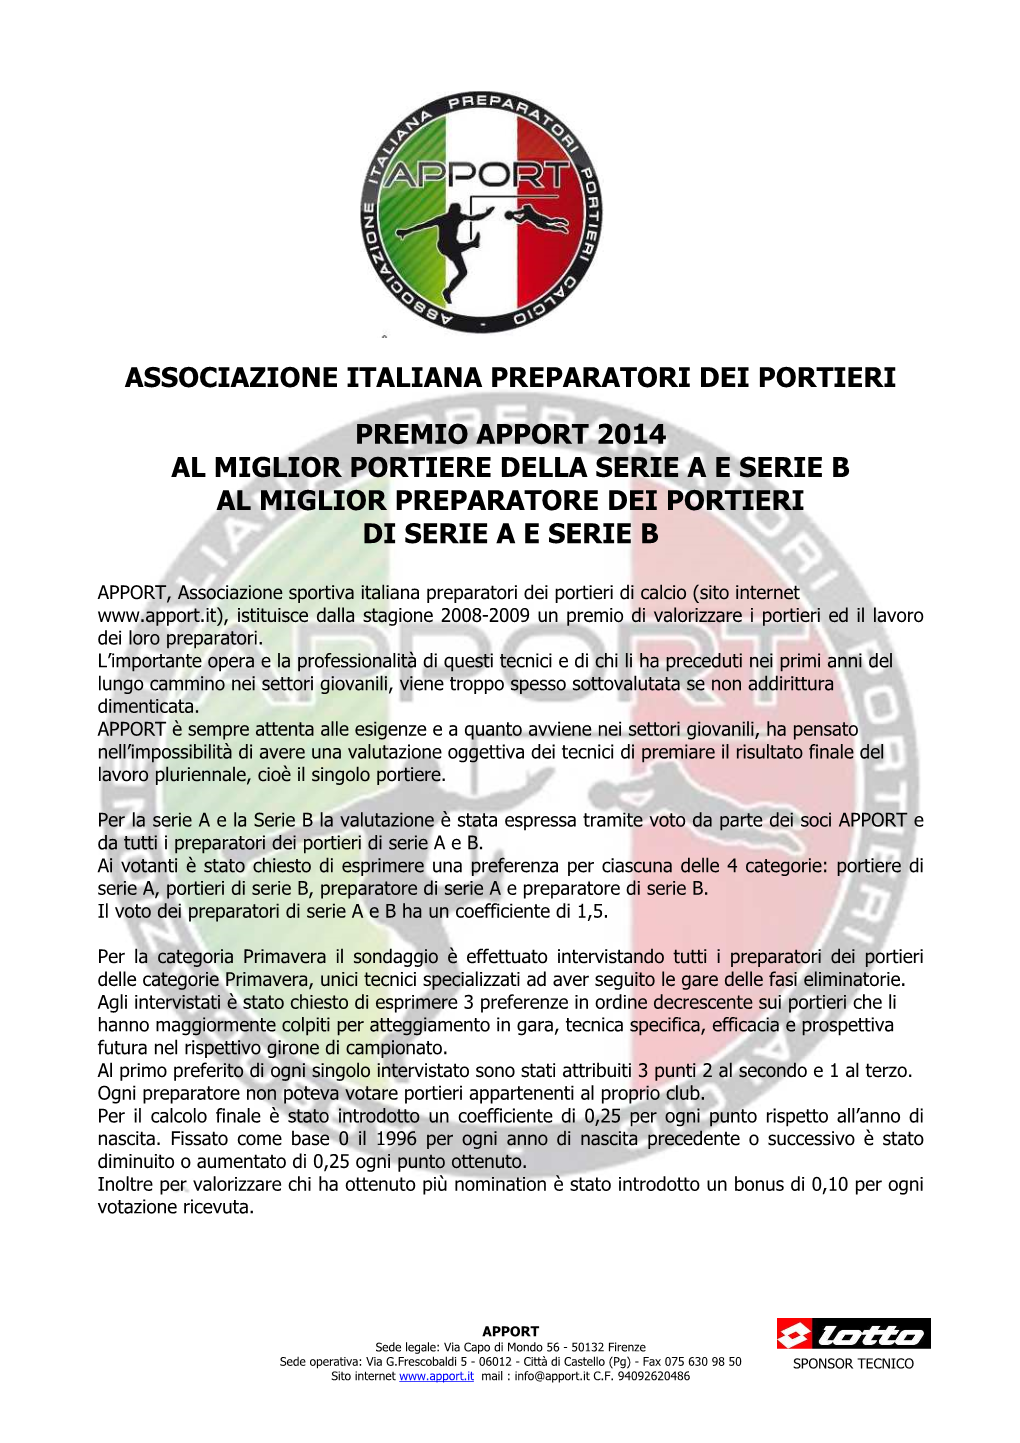 Premio Apport 2014 Al Miglior Portiere Della Serie a E Serie B Al Miglior Preparatore Dei Portieri Di Serie a E Serie B